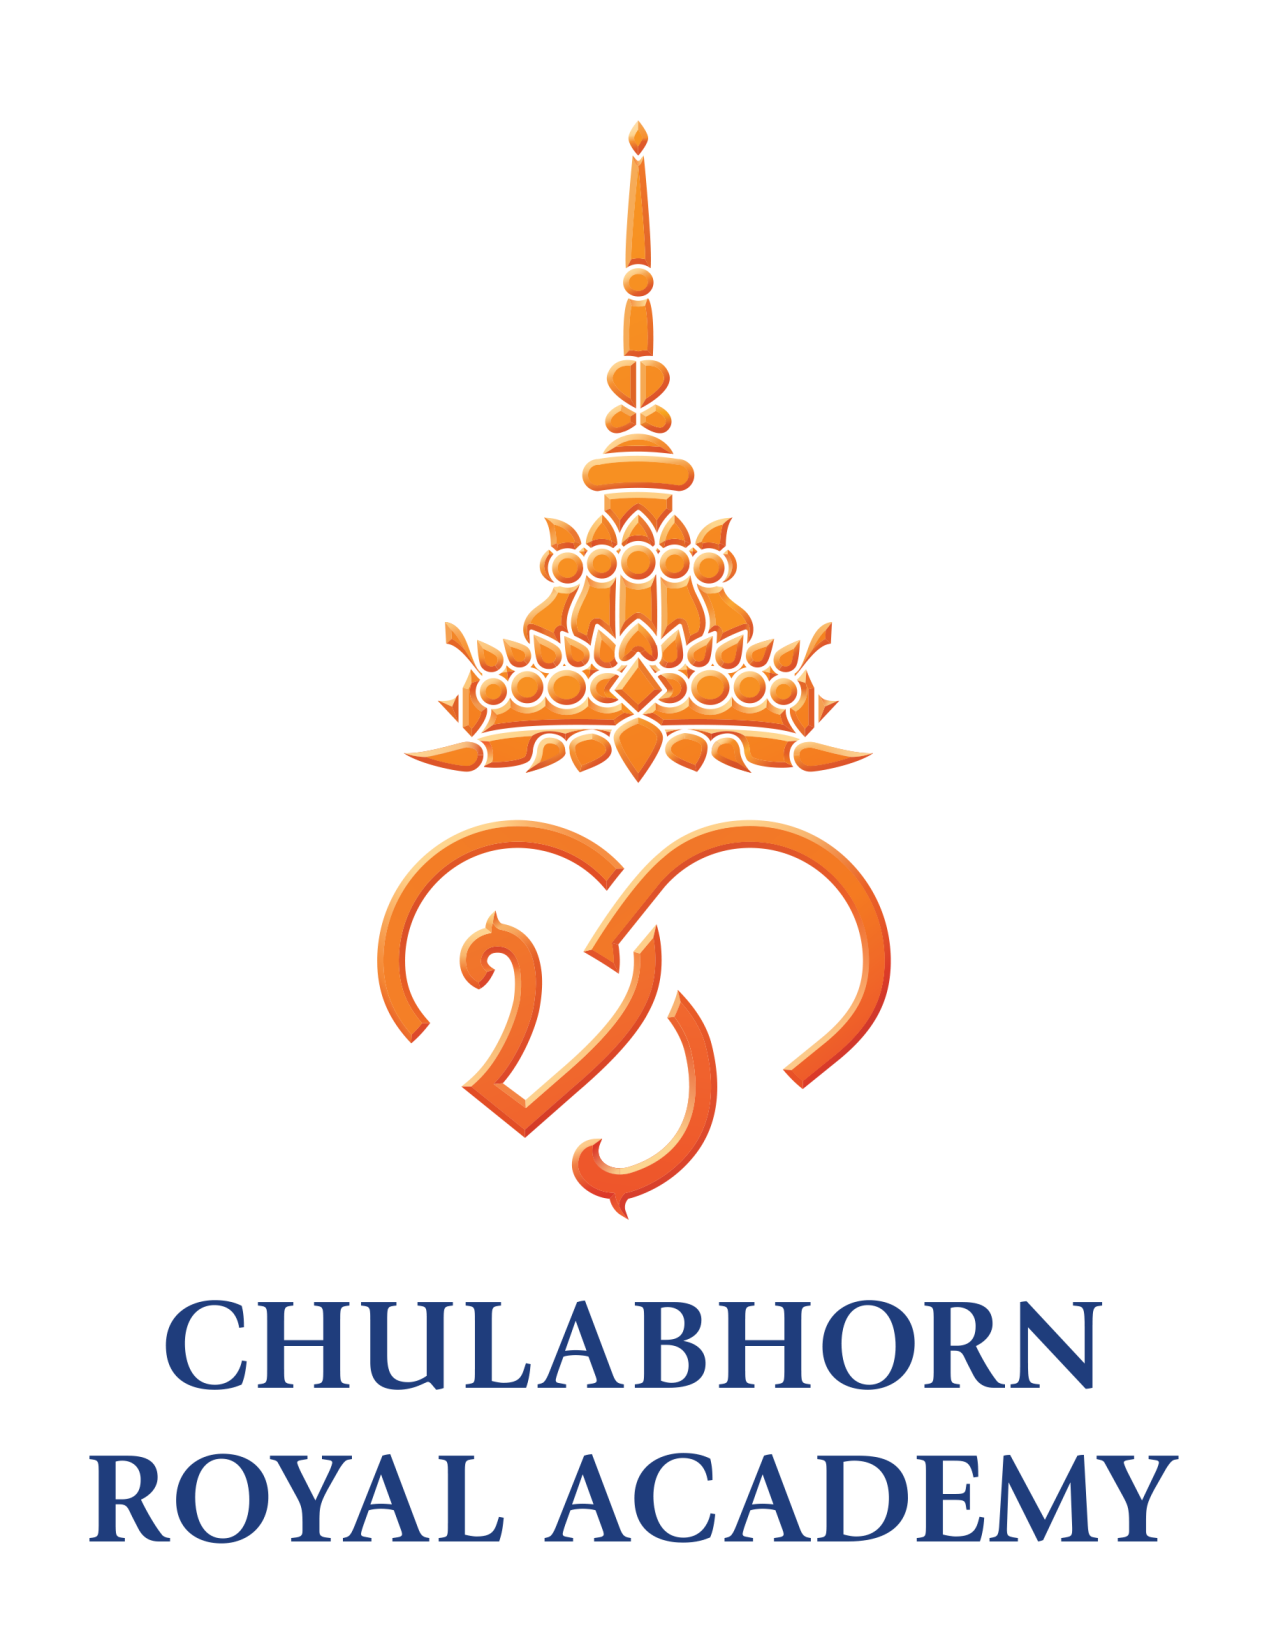 HRH Princess Chulabhorn Office of Technology and Innovation Development, Chulabhorn Royal Academy, Thailand